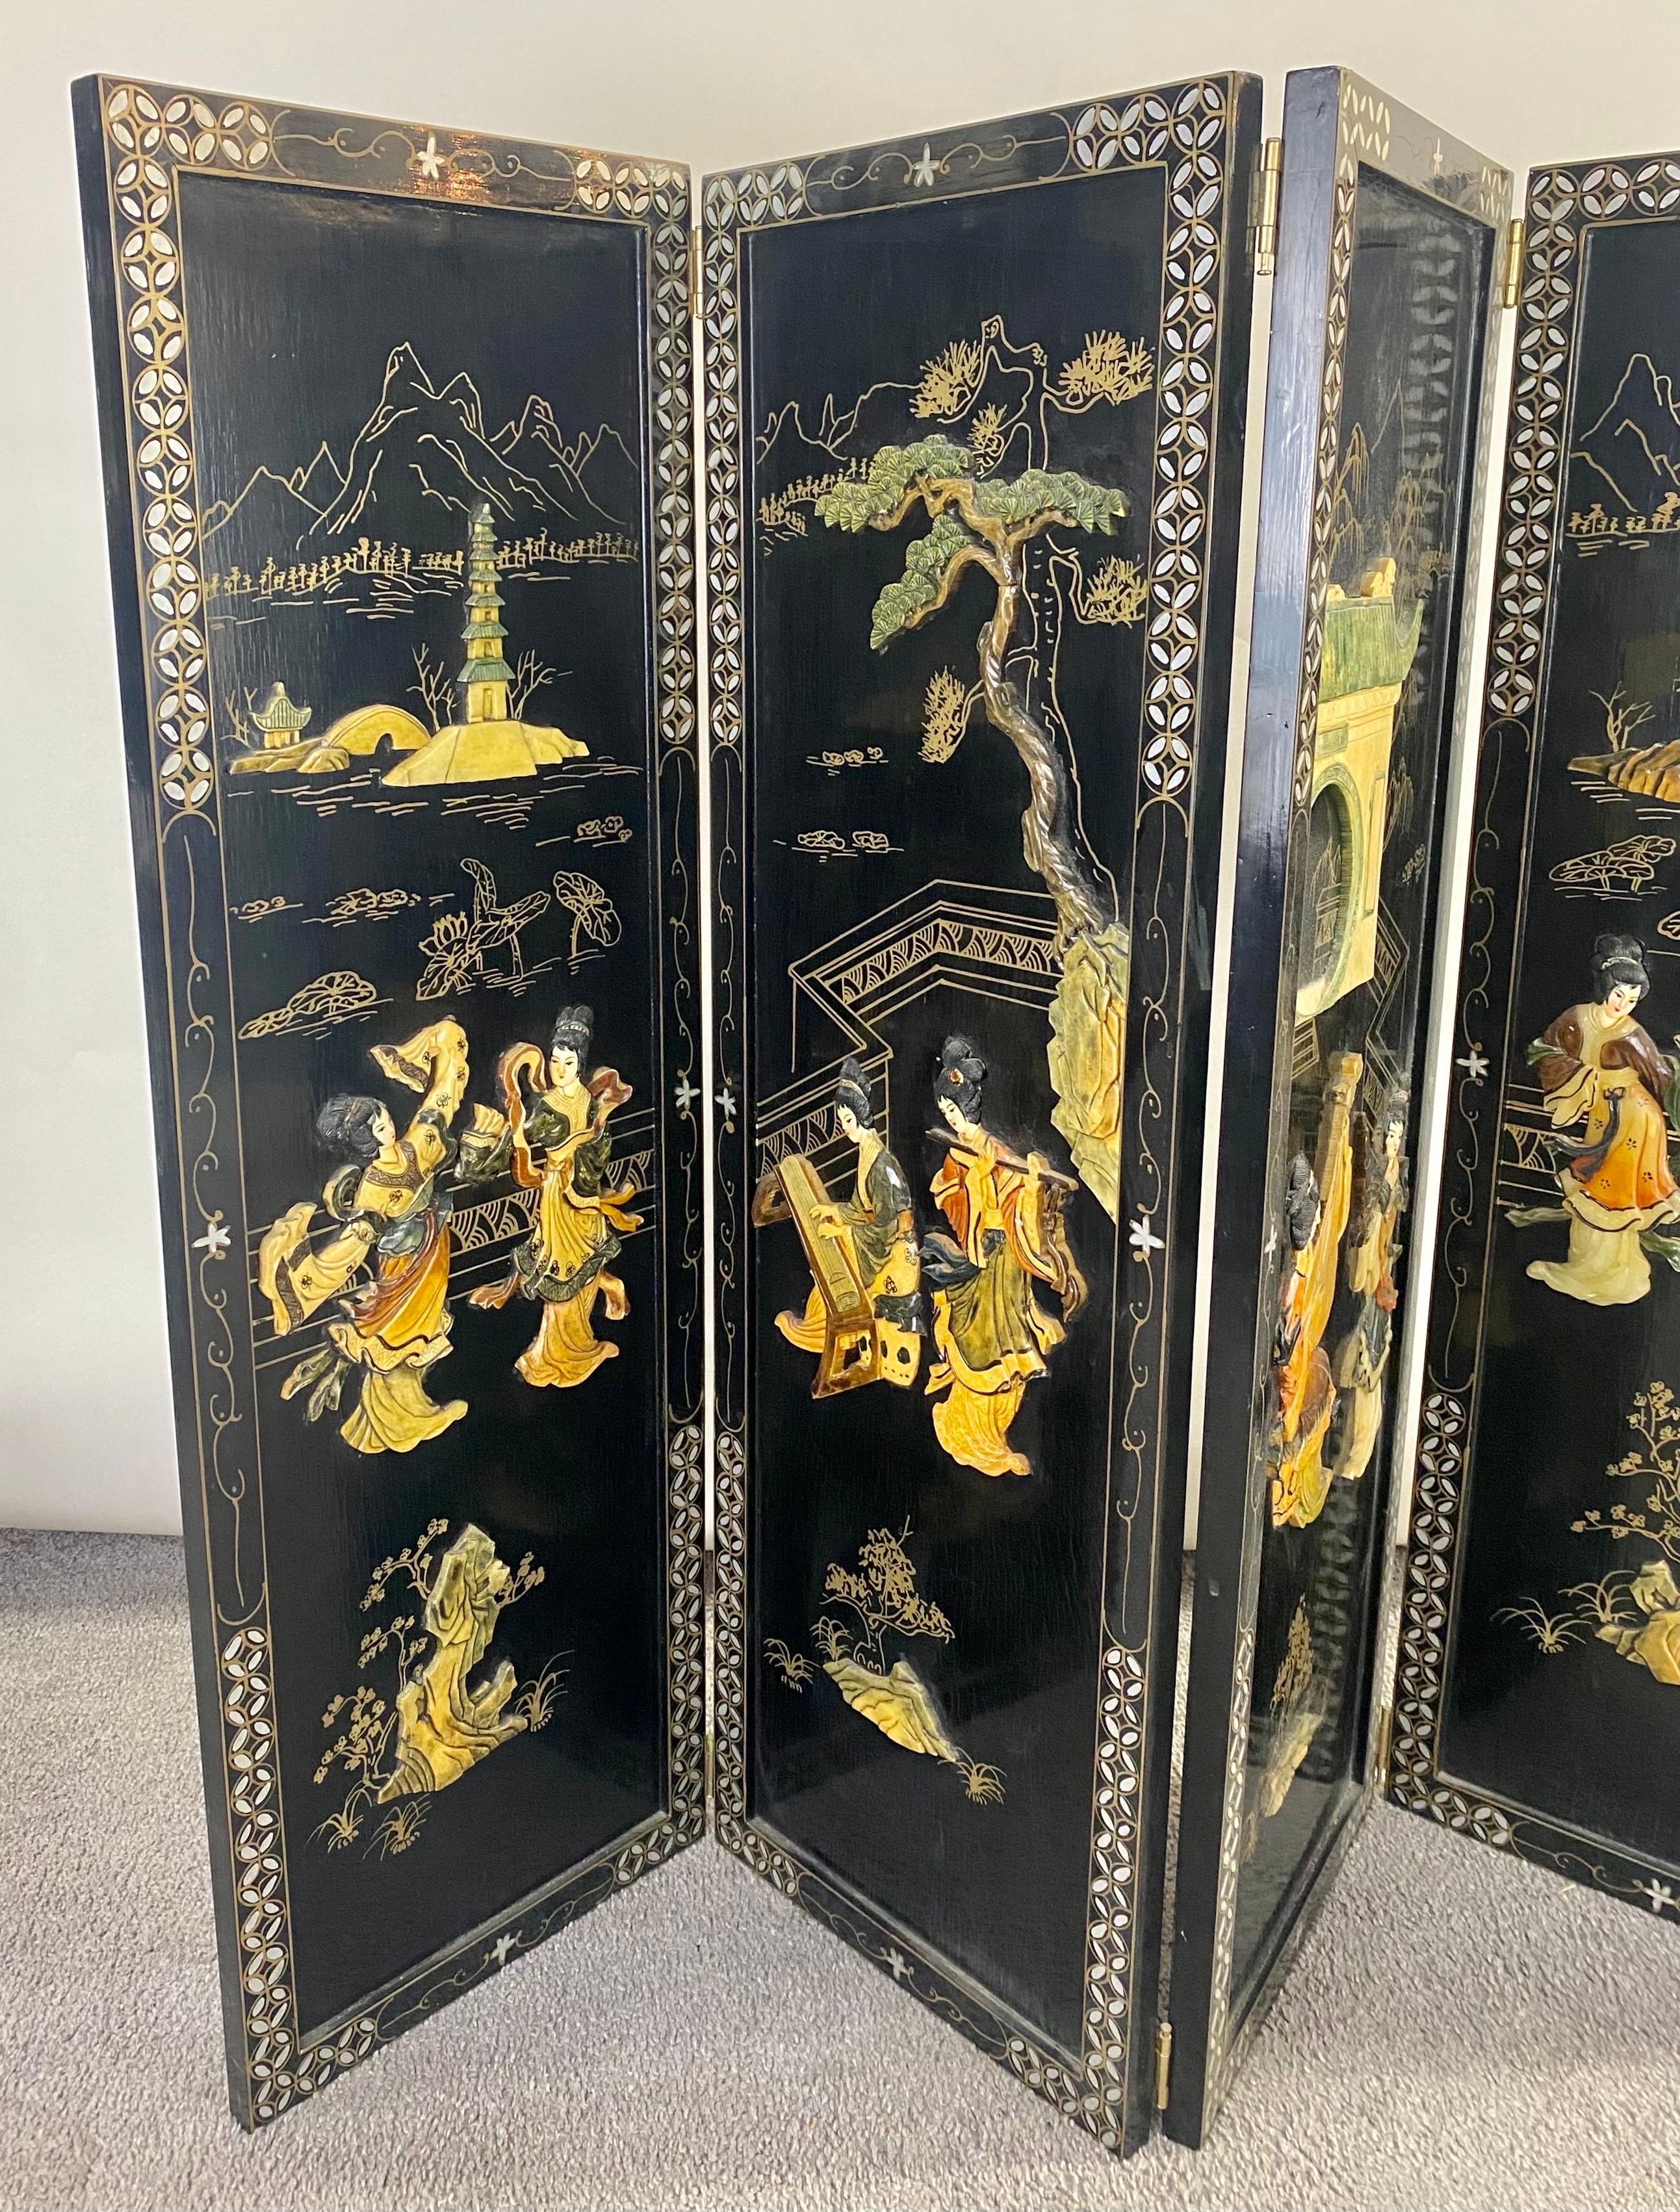 Eine exquisite chinesische vier Platten dekorative Wandplatte oder Bildschirm.  Das schöne Wandpaneel oder der Paravent zeigt chinesische Szenen von tanzenden Gaisha-Mädchen sowie Gartenansichten, fein geschnitzt aus Speckstein und handbemalt auf